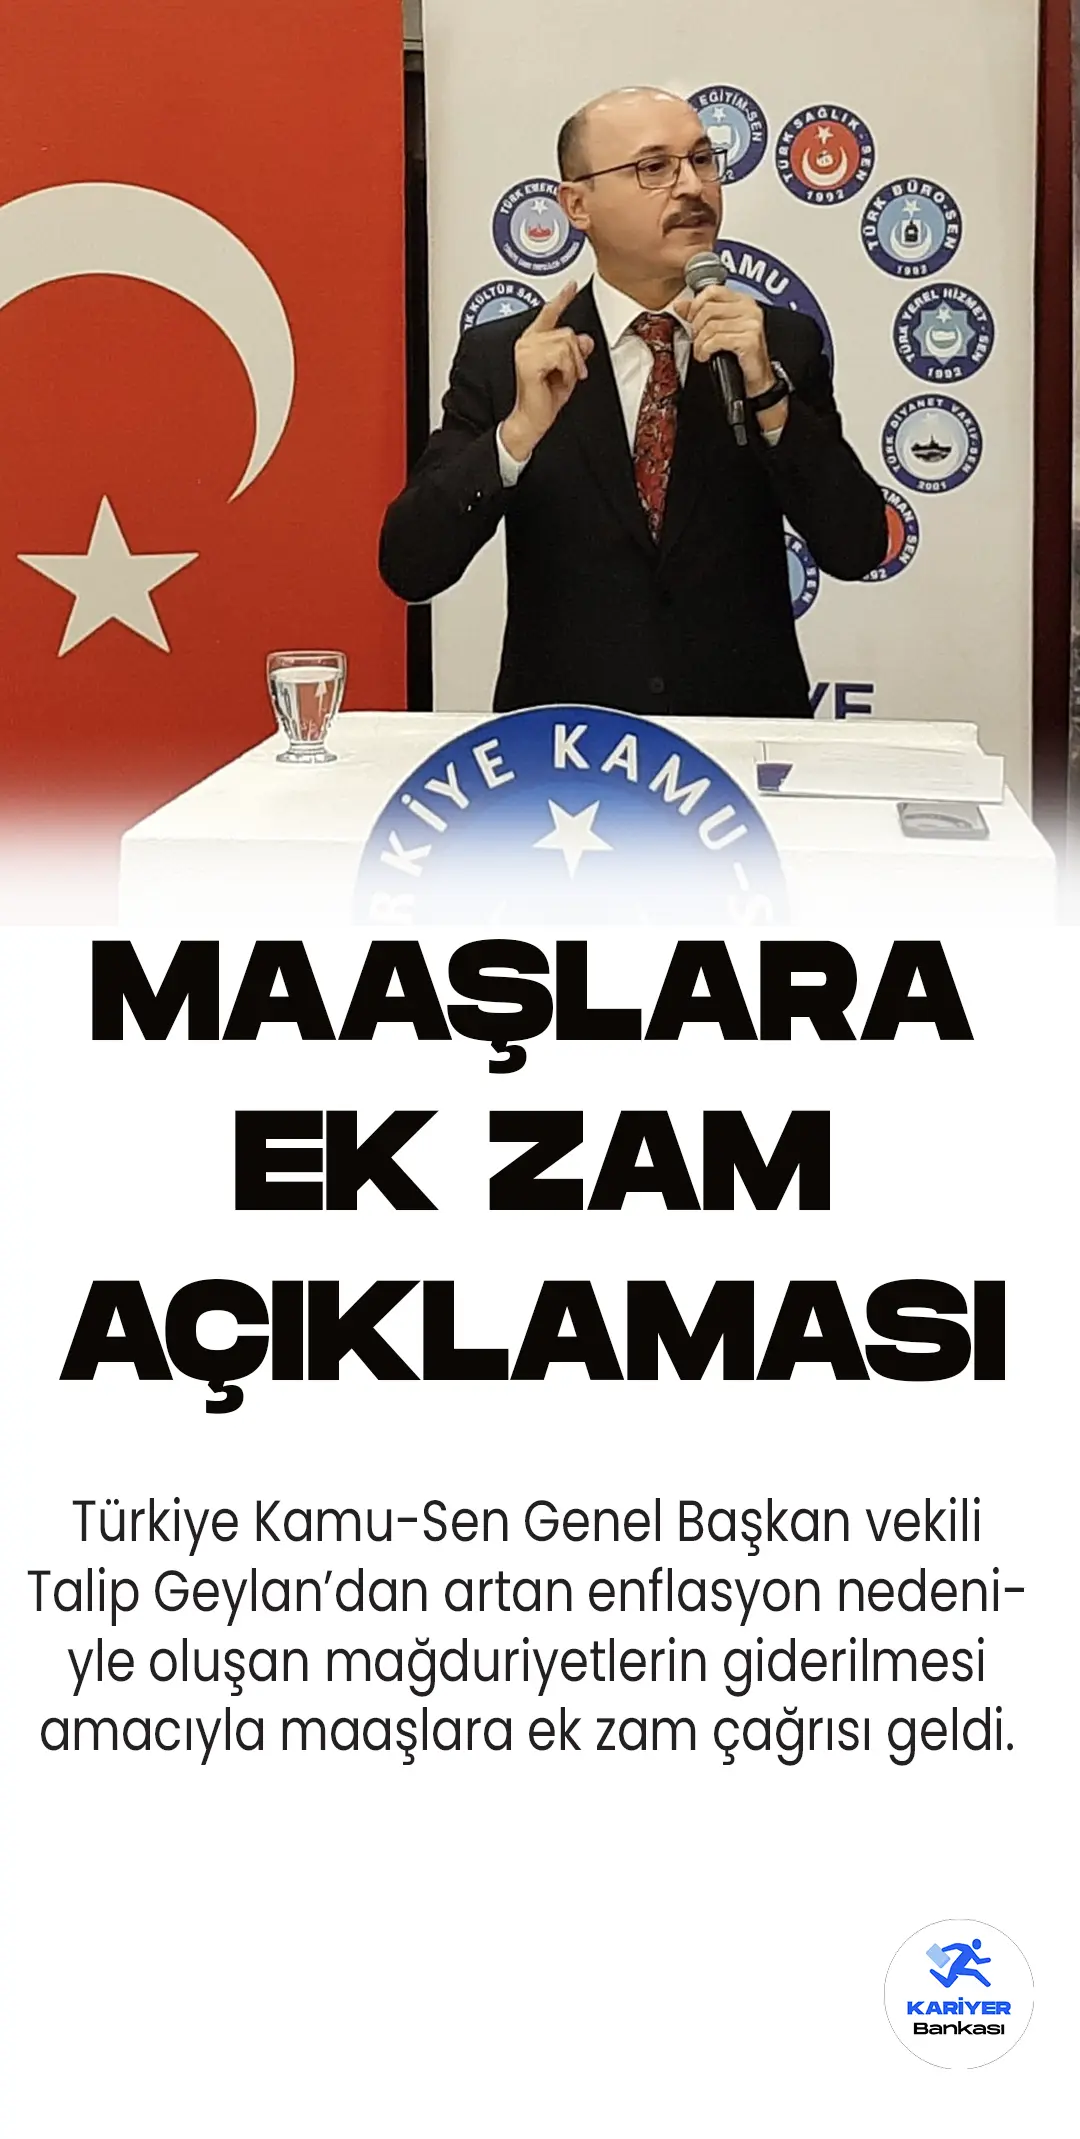 Türkiye Kamu-Sen'den ek zam çağrısı geldi. Genel Başkan vekili Talip Geylan tarafından yayımlanan mesajda, enflasyon nedeniyle...